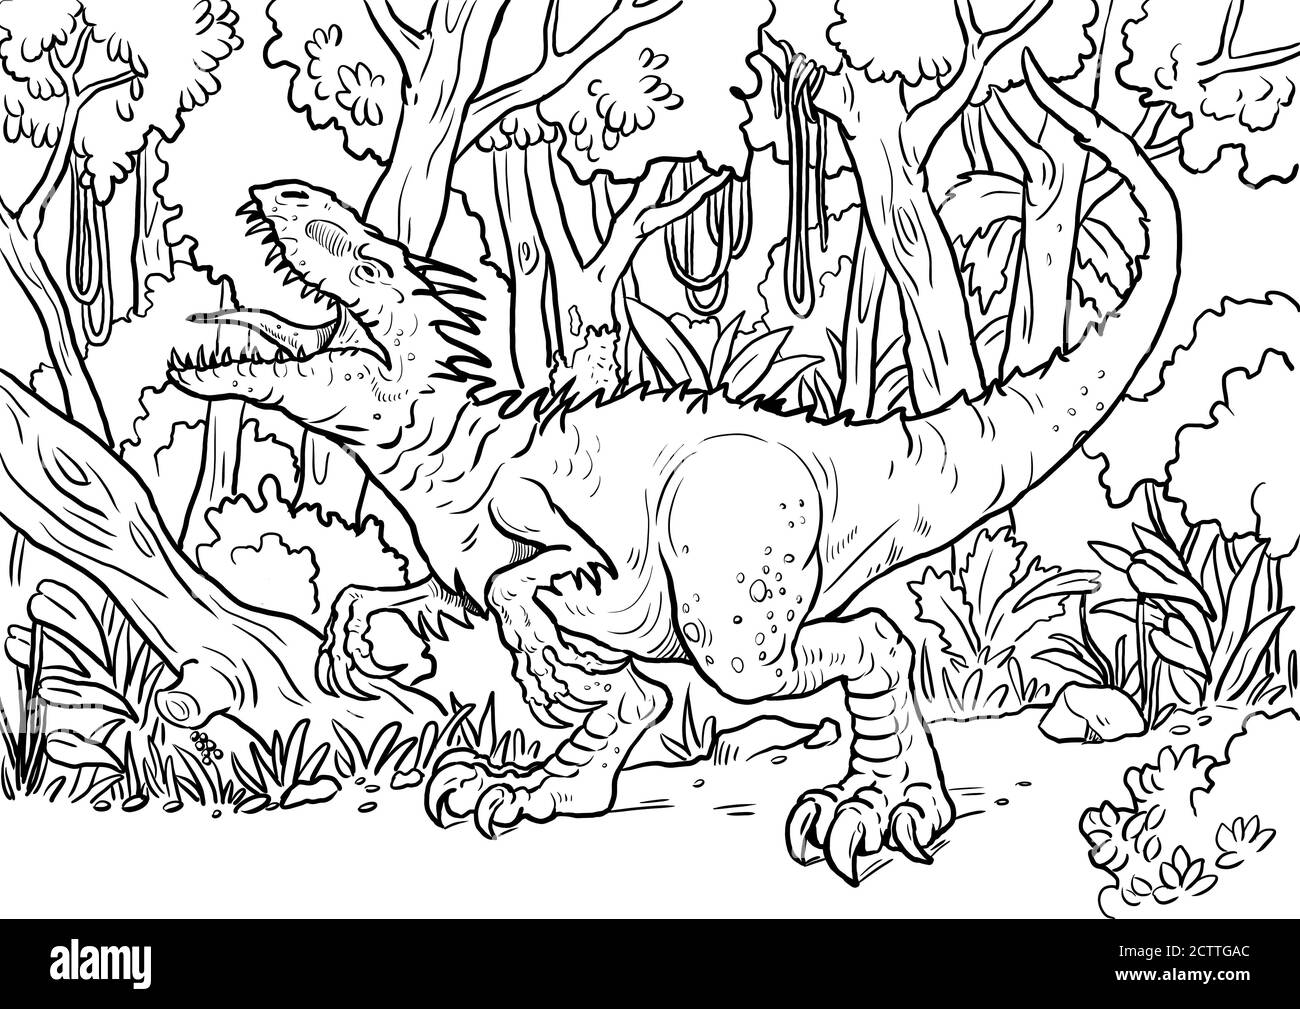 Jurassic Park Book Immagini E Fotos Stock Alamy